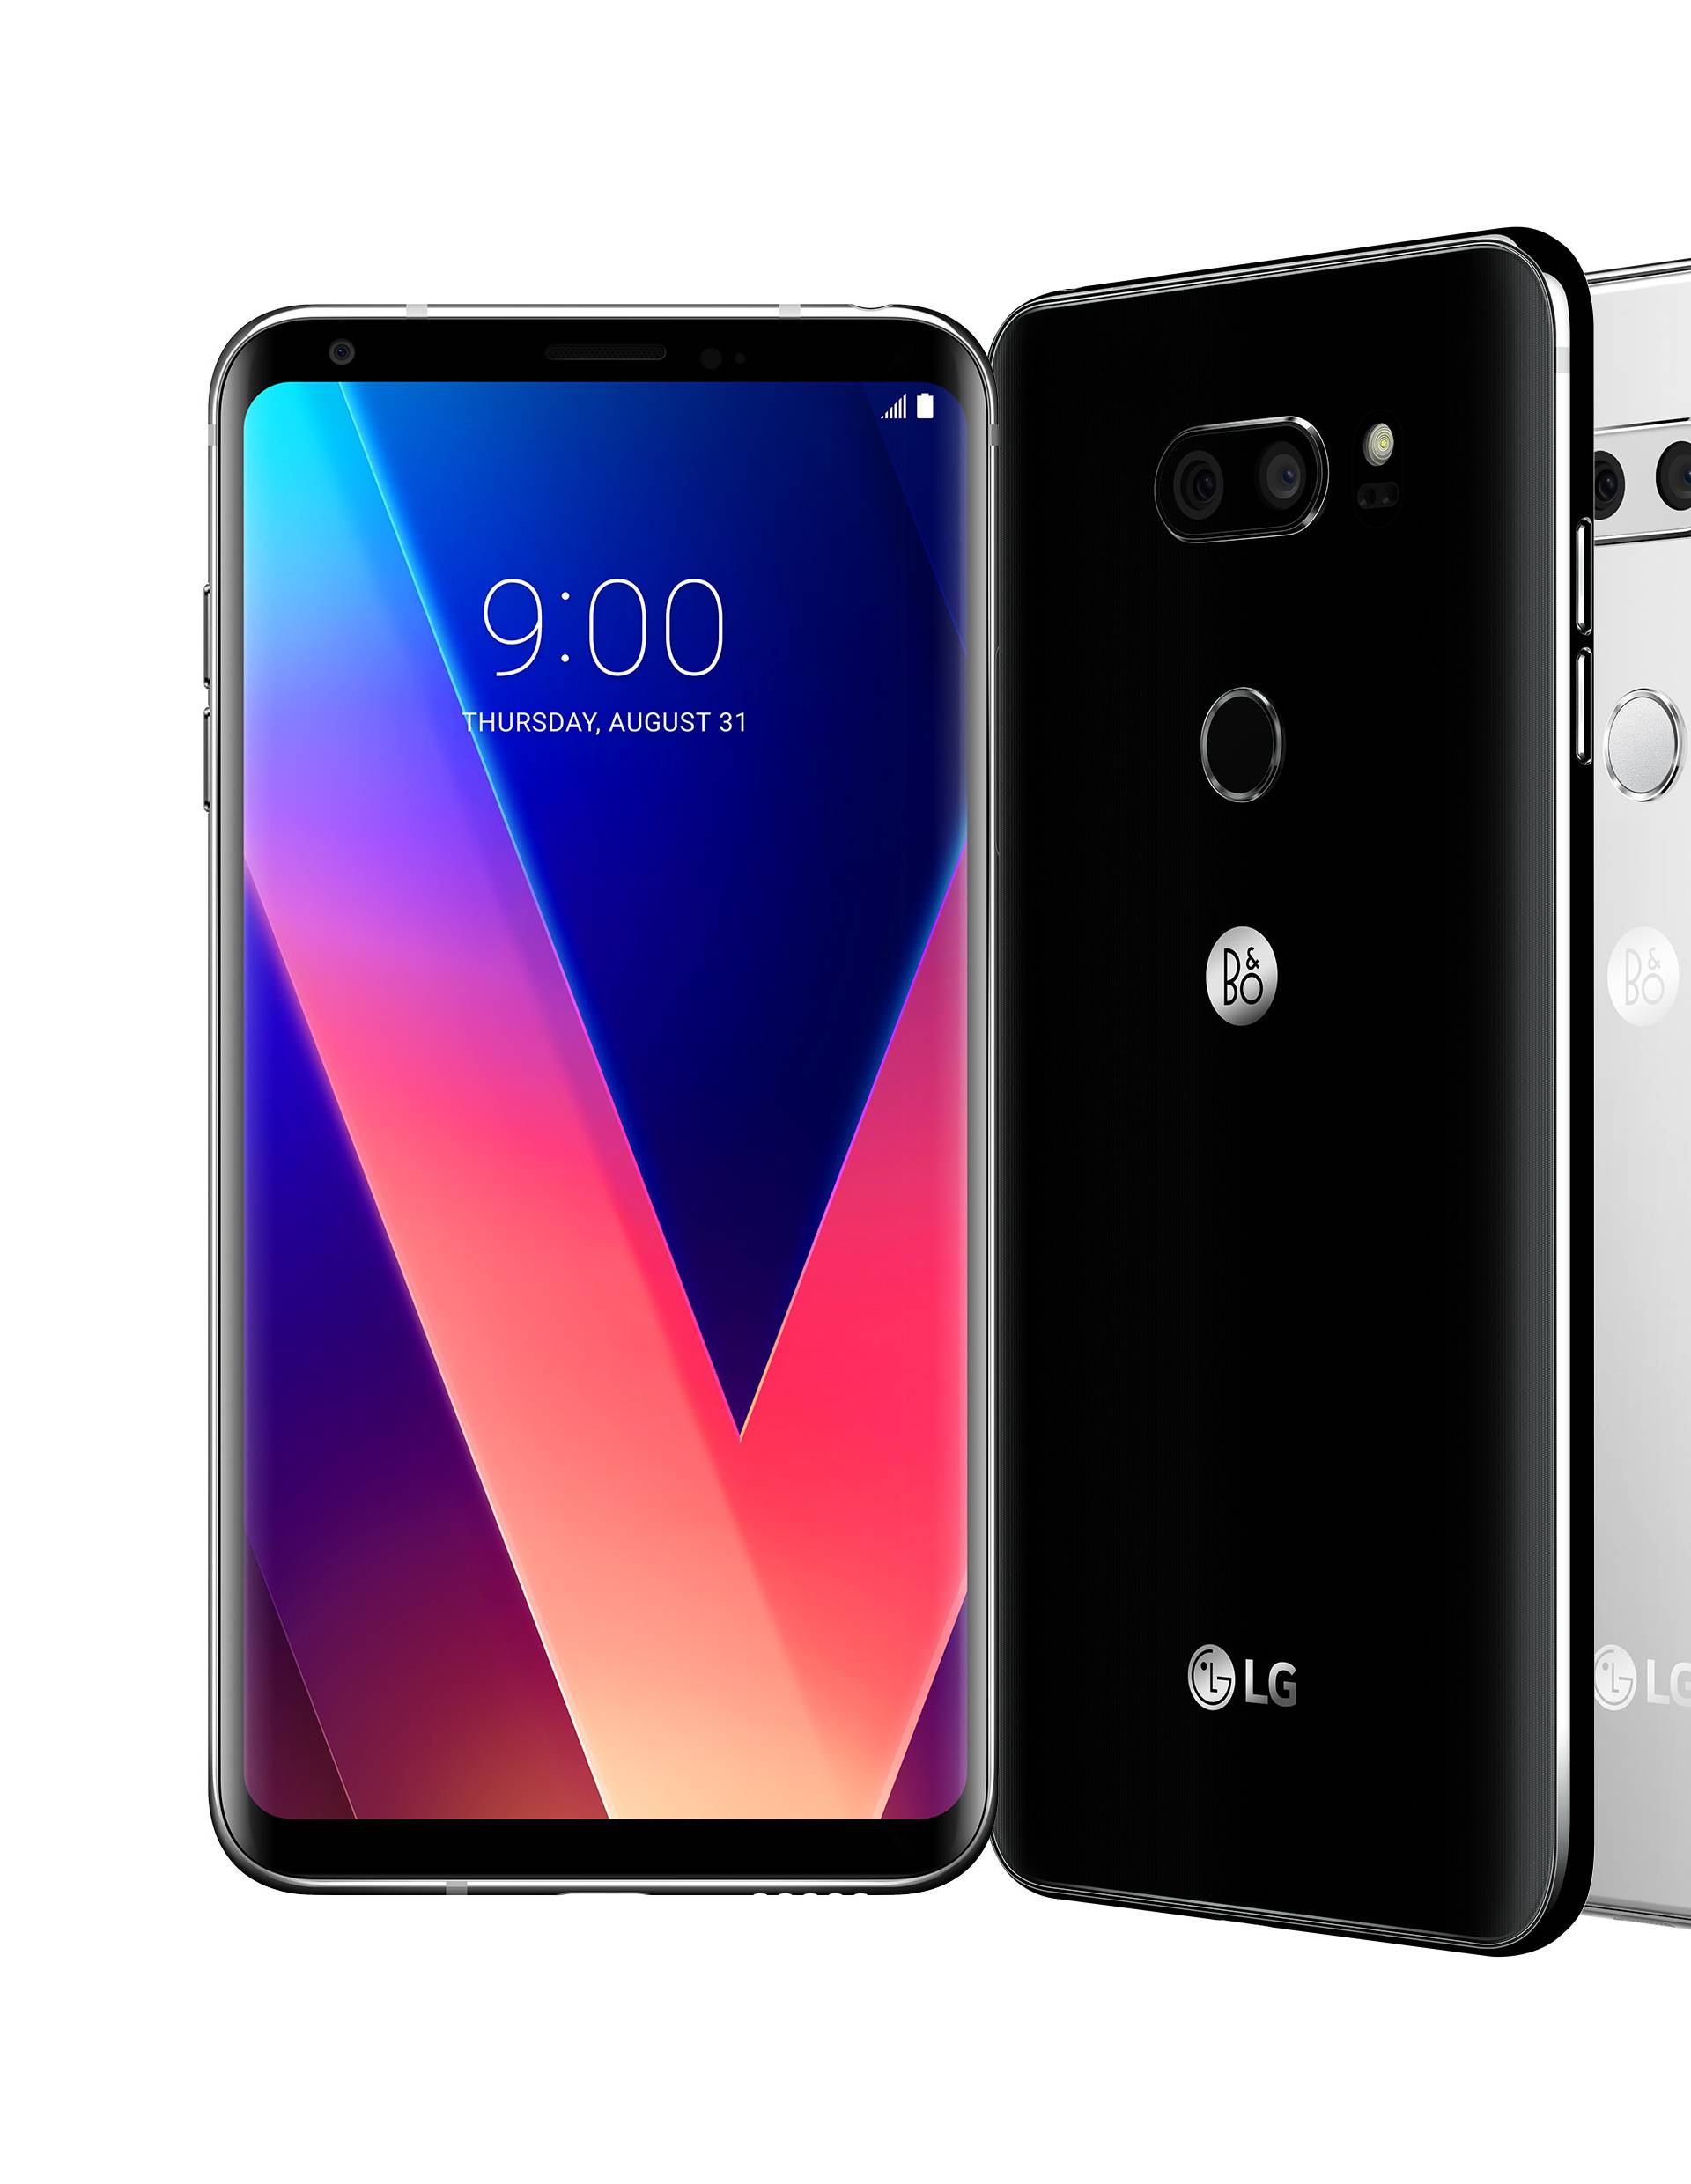 LG V30 kao Huawei: Do boljih fotki uz umjetnu inteligenciju